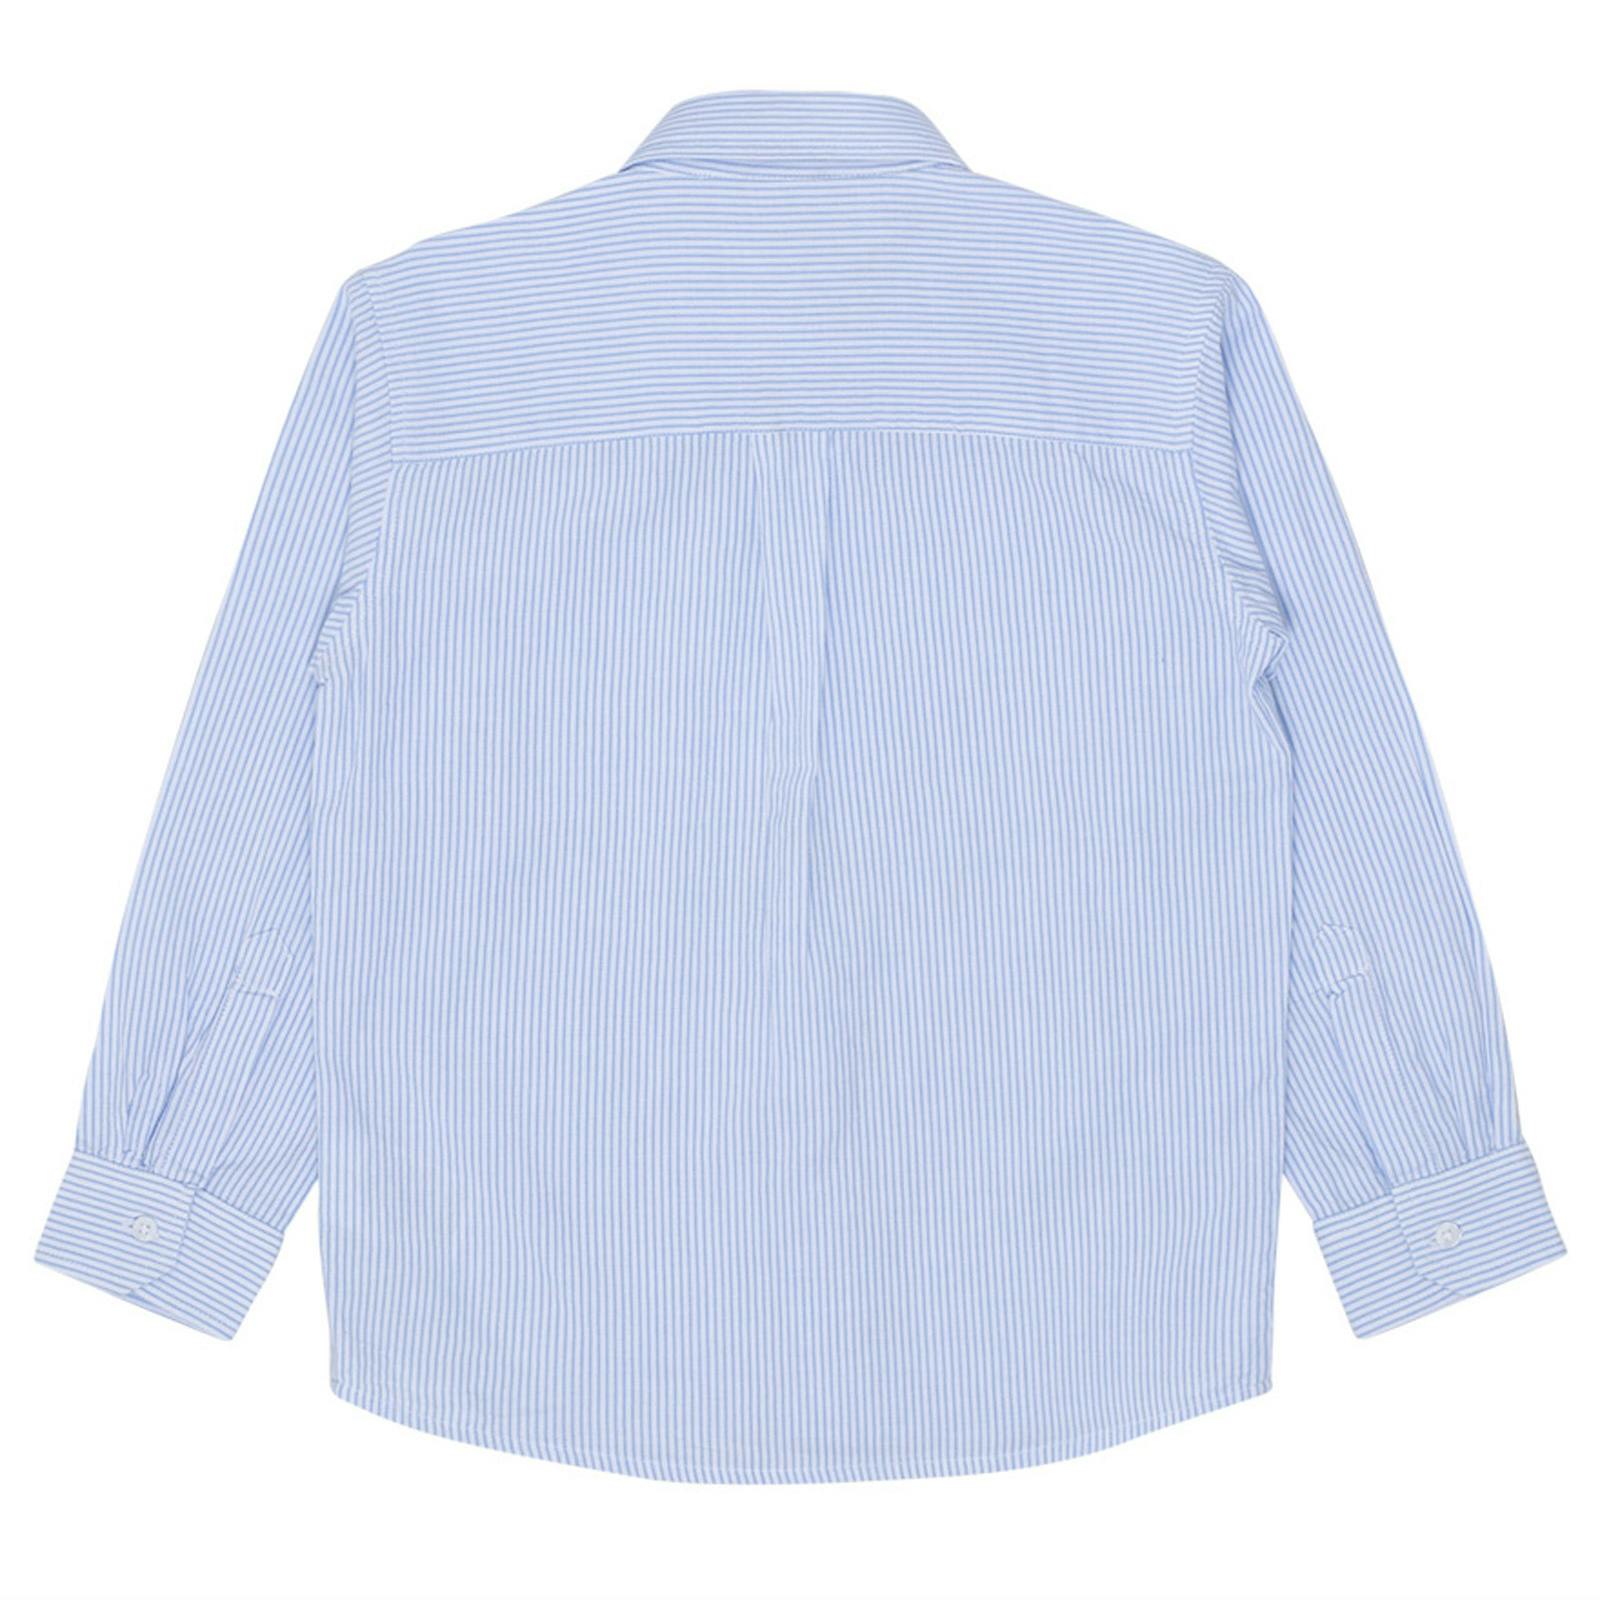 Skjorta - smalrandig ljusblå